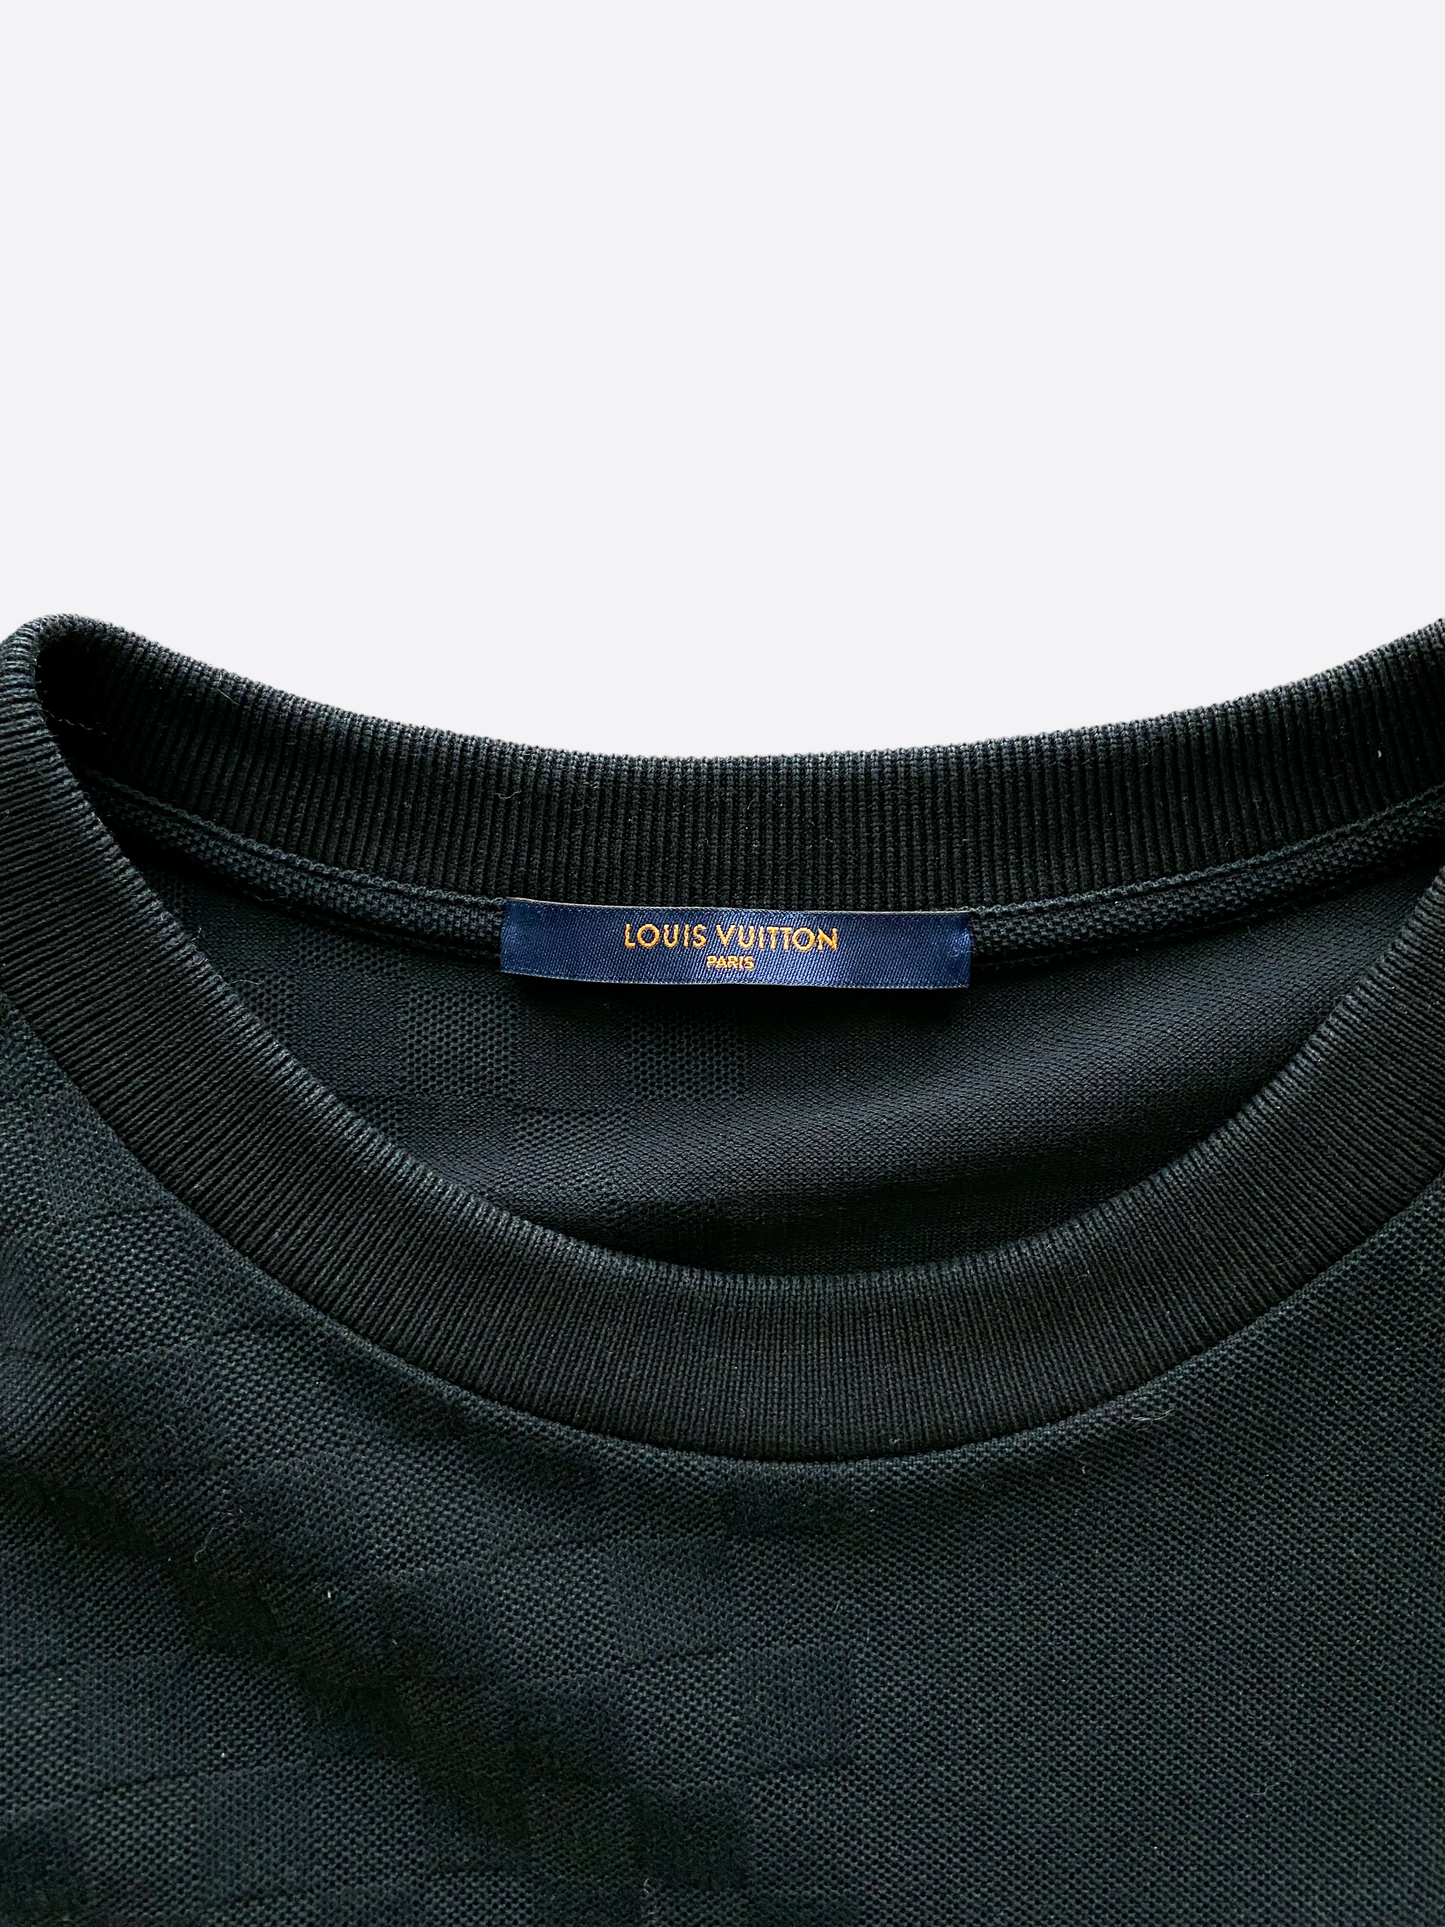 Louis Vuitton Half Damier Pocket Polo BLACK. Size Xs